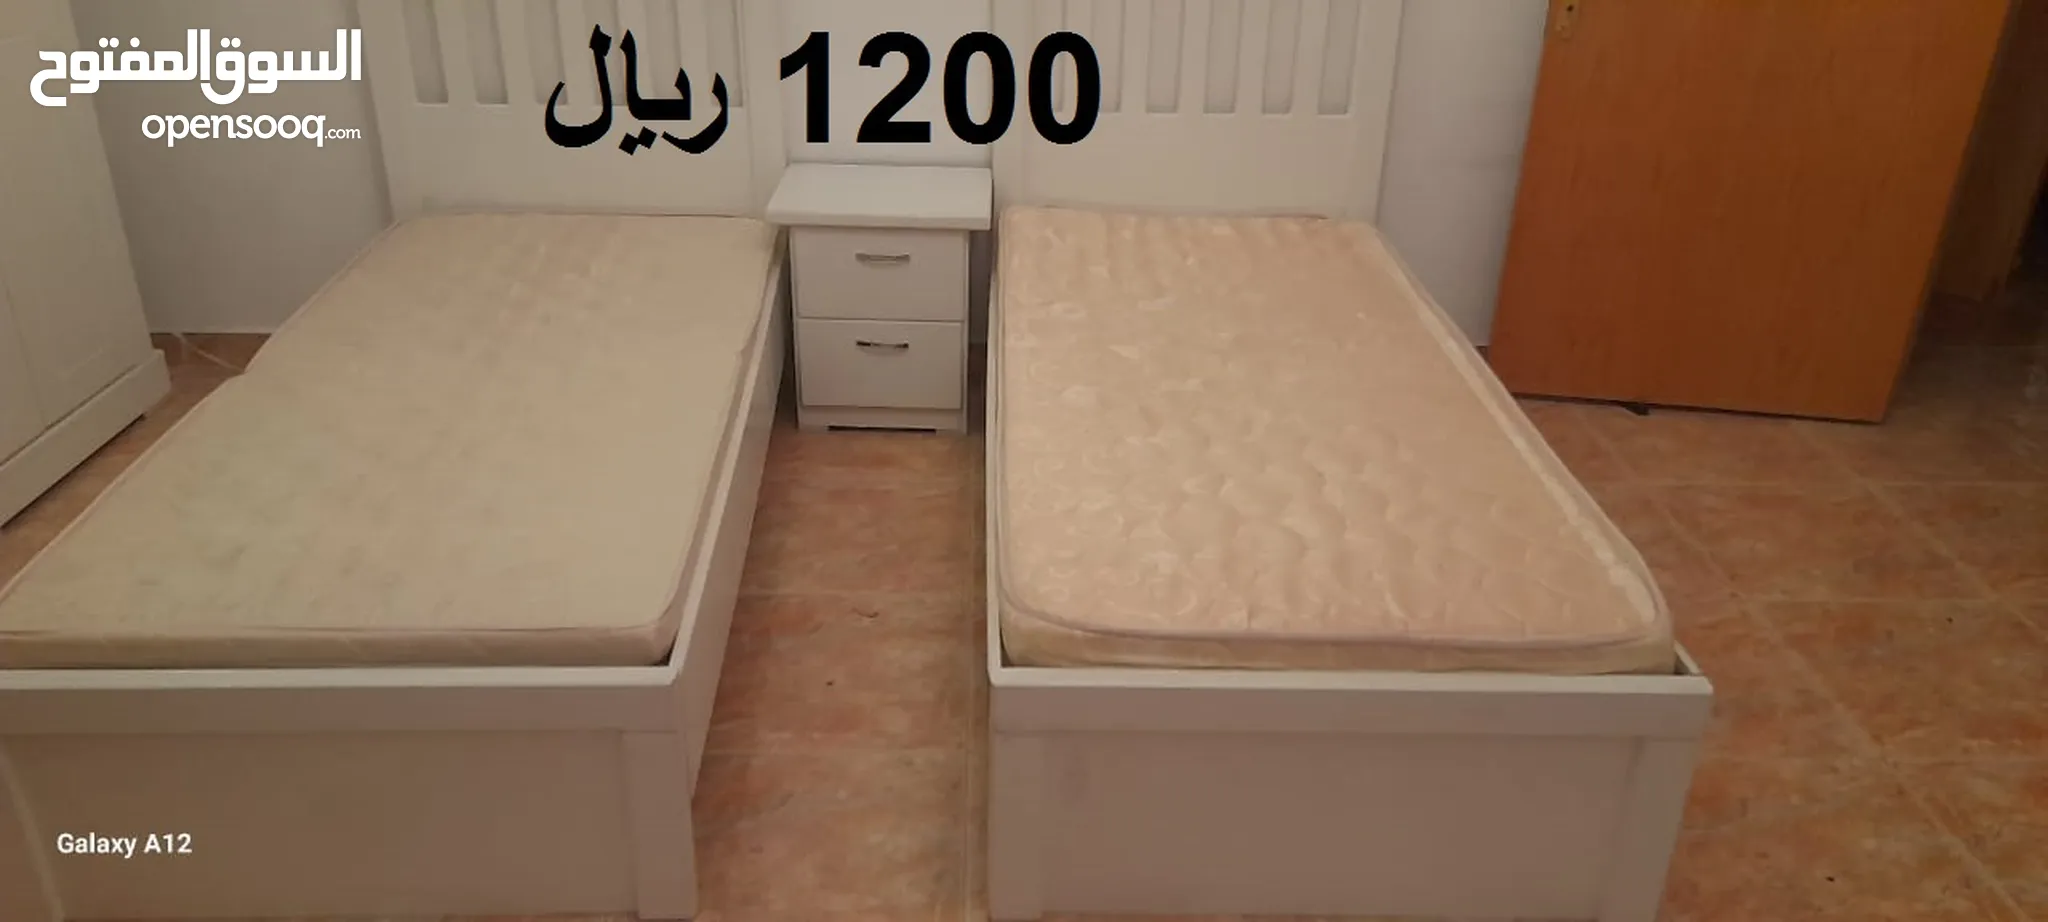 غرف نوم اطفال للبيع : ارخص الاسعار : غرف نوم ايكيا : غرف اطفال مودرن في  السعودية | السوق المفتوح